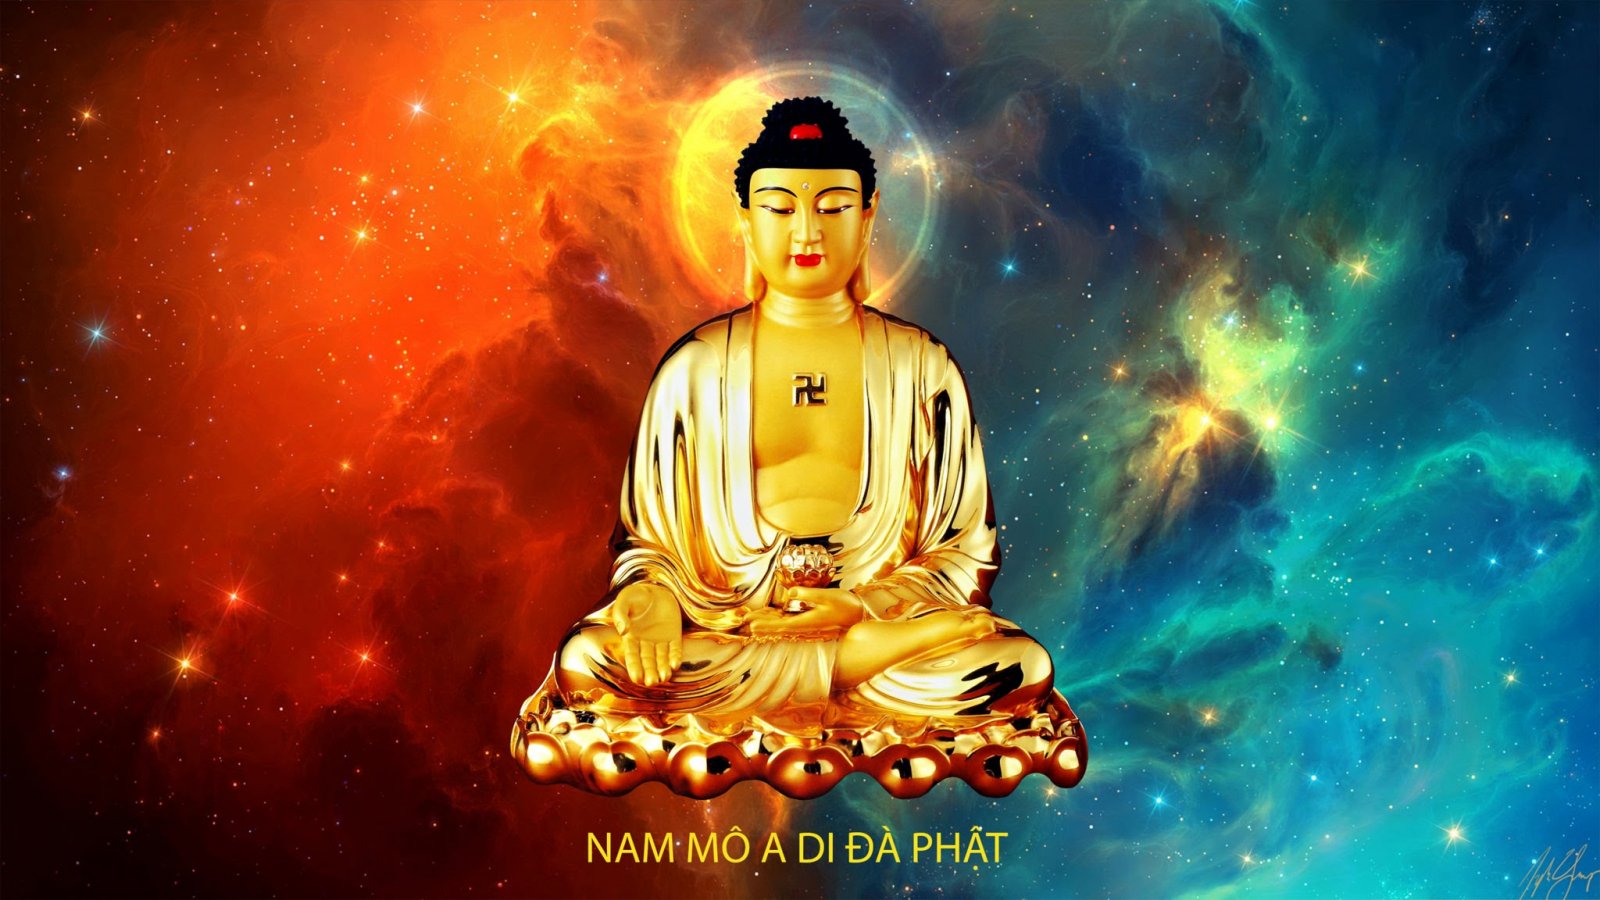 Hãy ngóng trông chiêm ngưỡng bức ảnh đặc biệt của Nam mô tiếp dẫn Đạo sư A Di Đà Phật, ngài với tâm hồn rộng mở giúp đưa mọi người đến với sự an lạc.